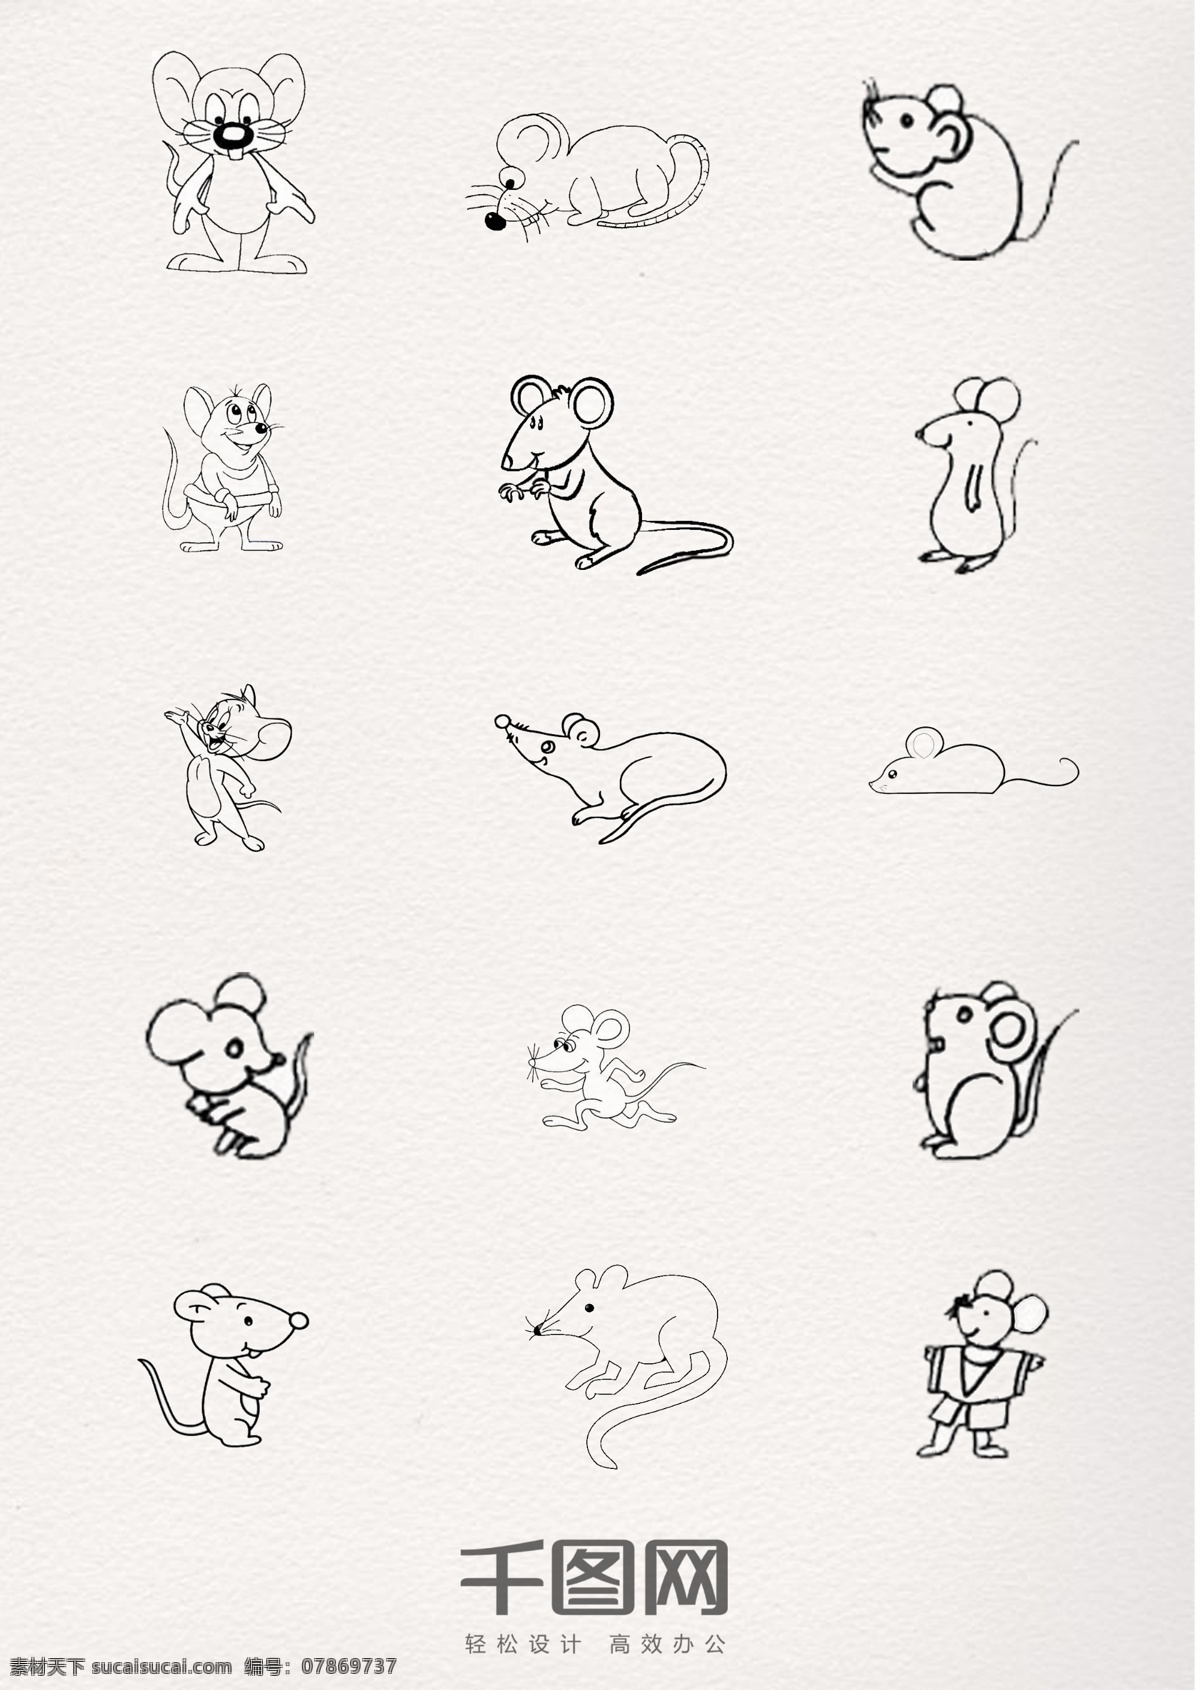 黑色 线条 老鼠 动物 简 笔画 卡通 可爱 简笔画 铅笔 钢笔